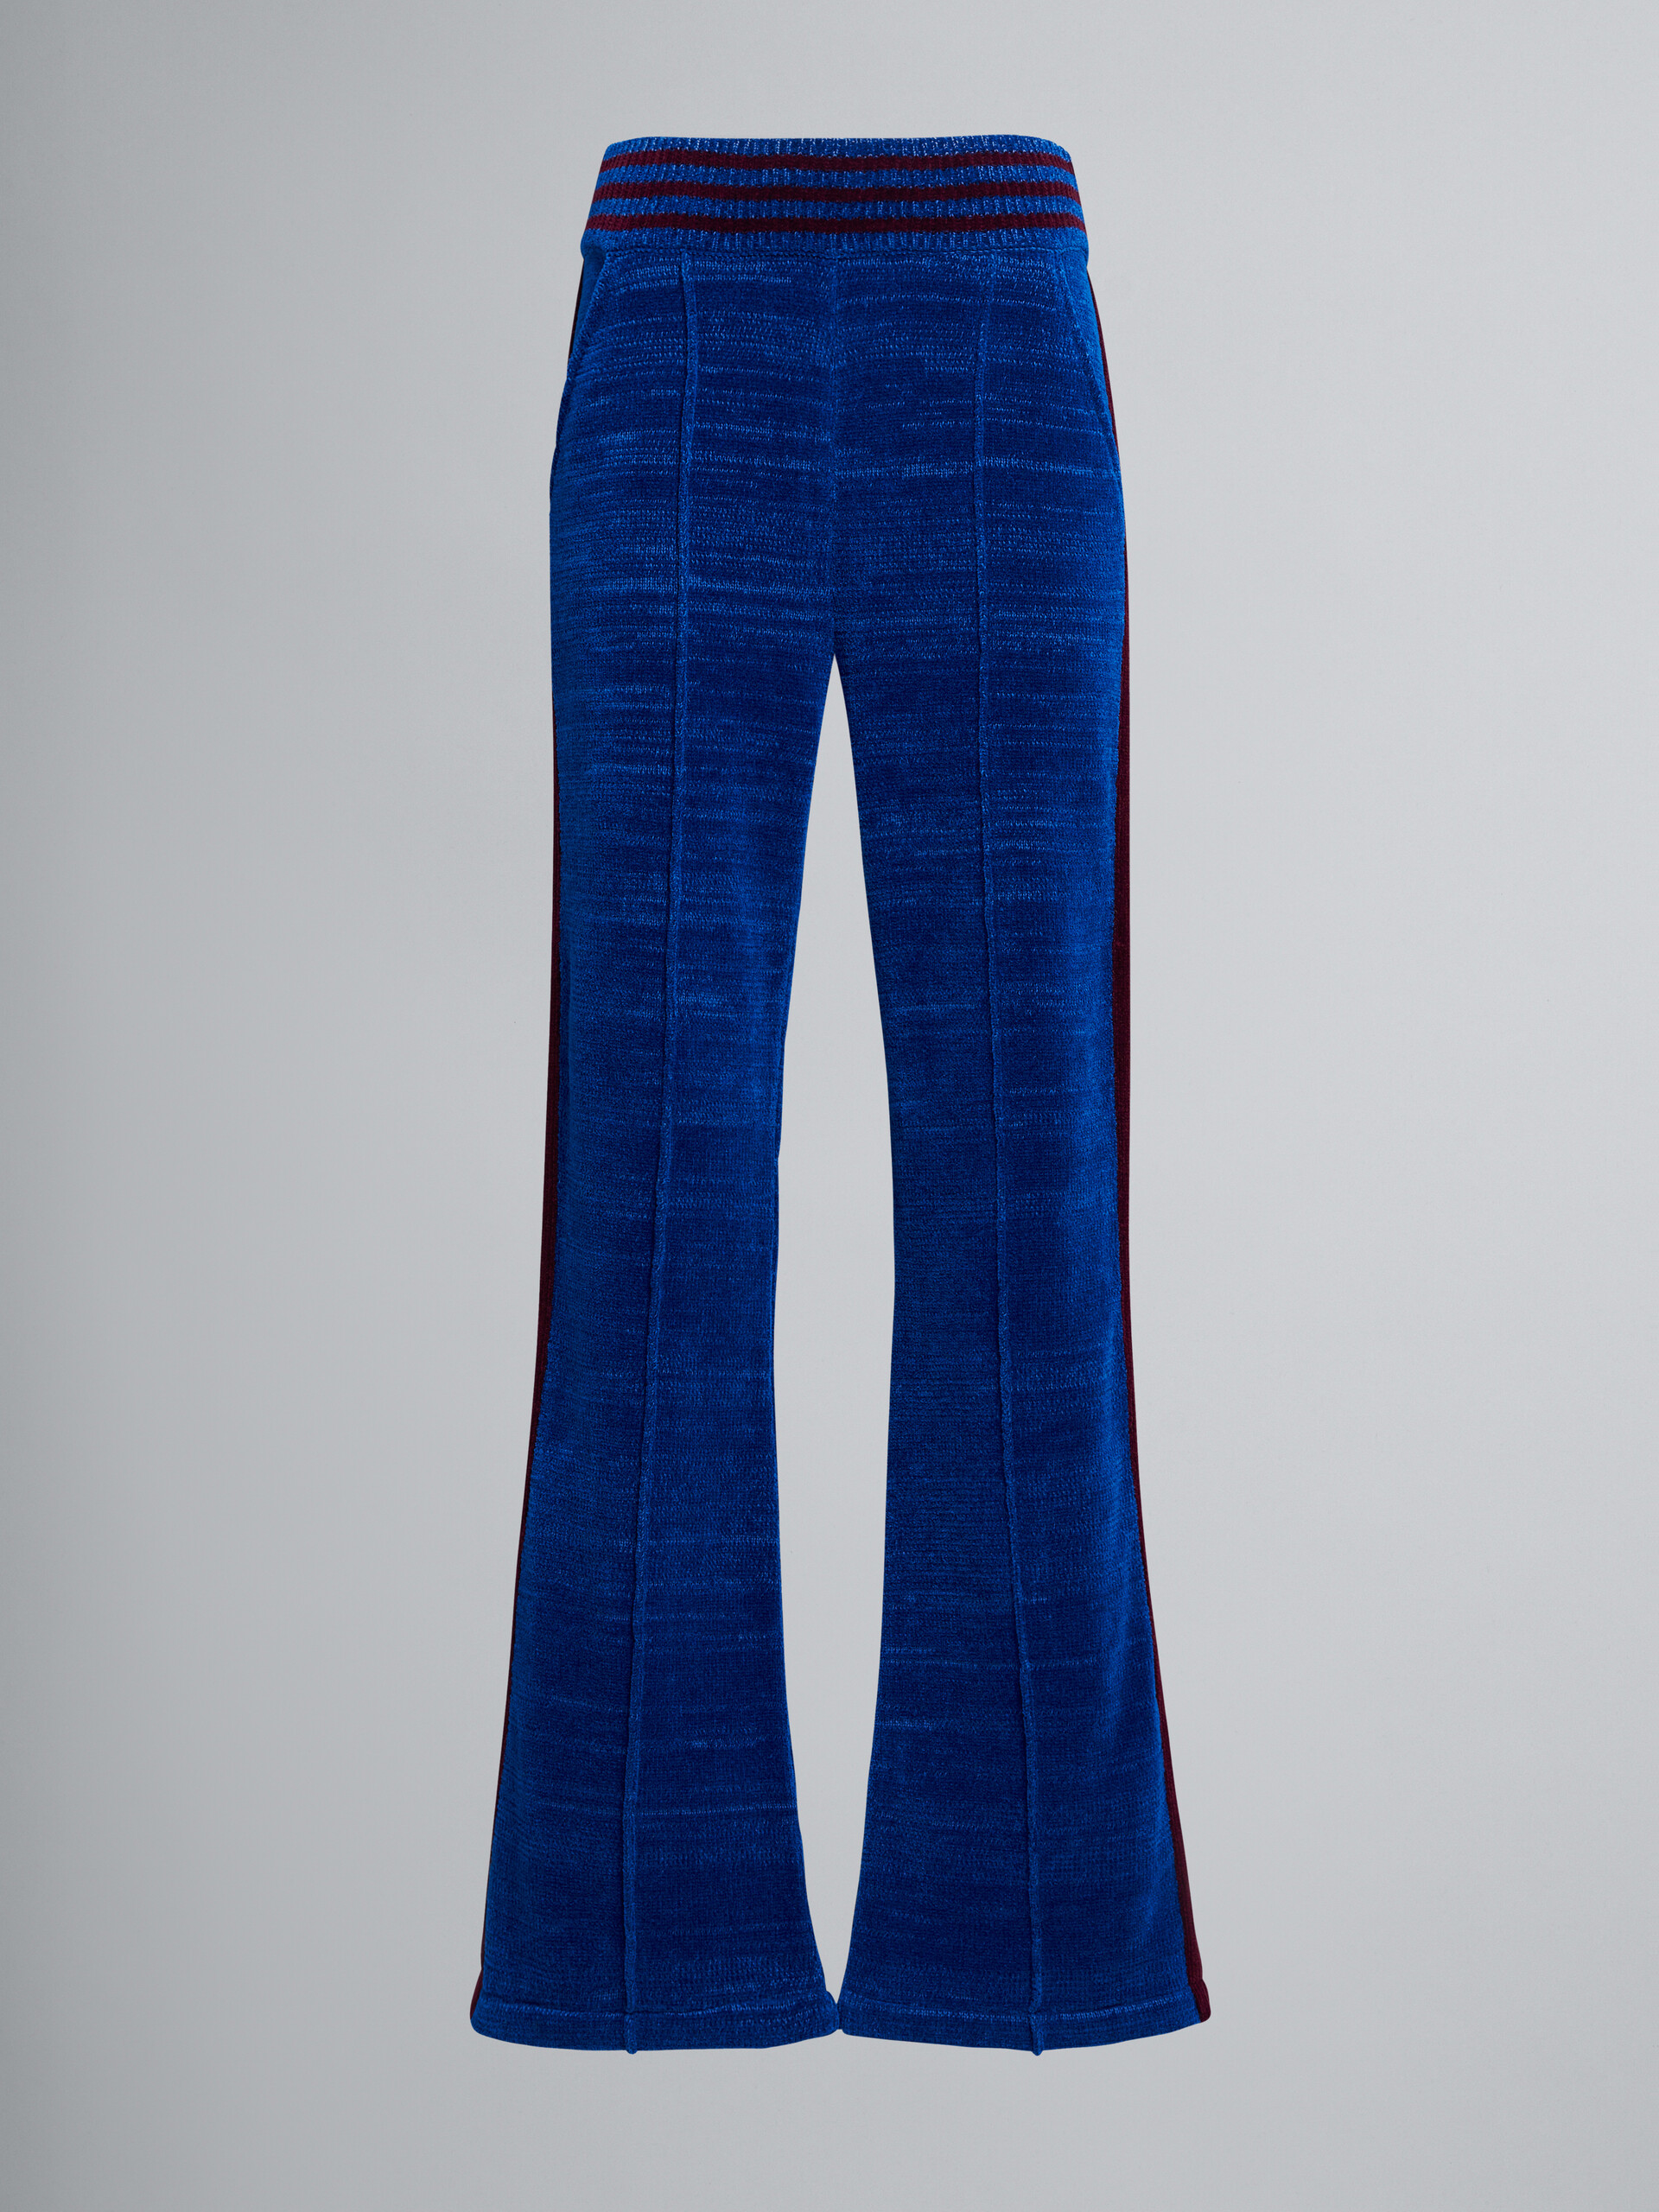 Mouliné chenille trousers - Pants - Image 1